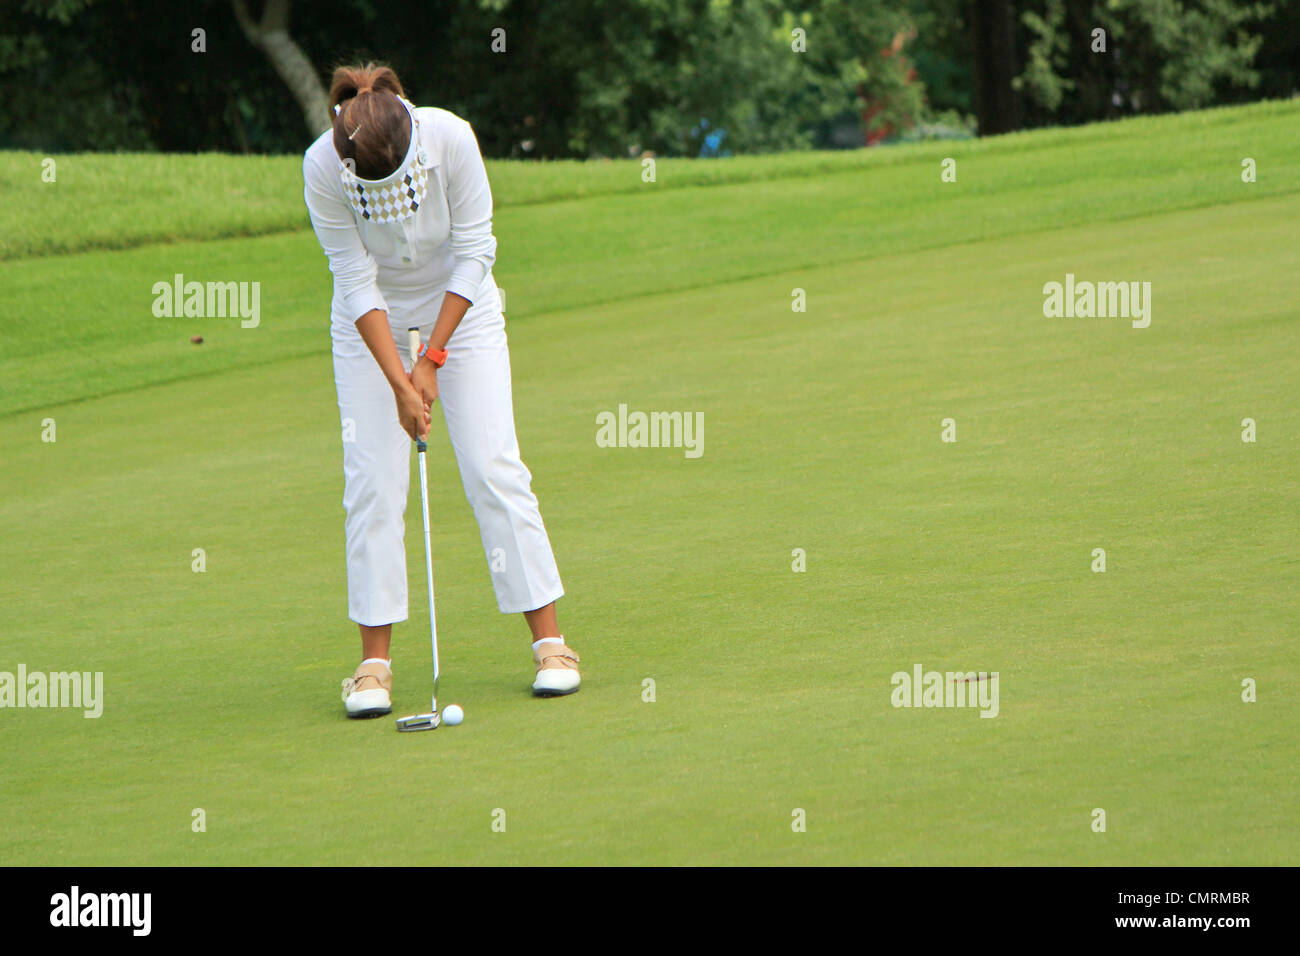 Donna golfista bianco da indossare i panni di golf, concentrando per mettere la palla sul foro sul verde Foto Stock